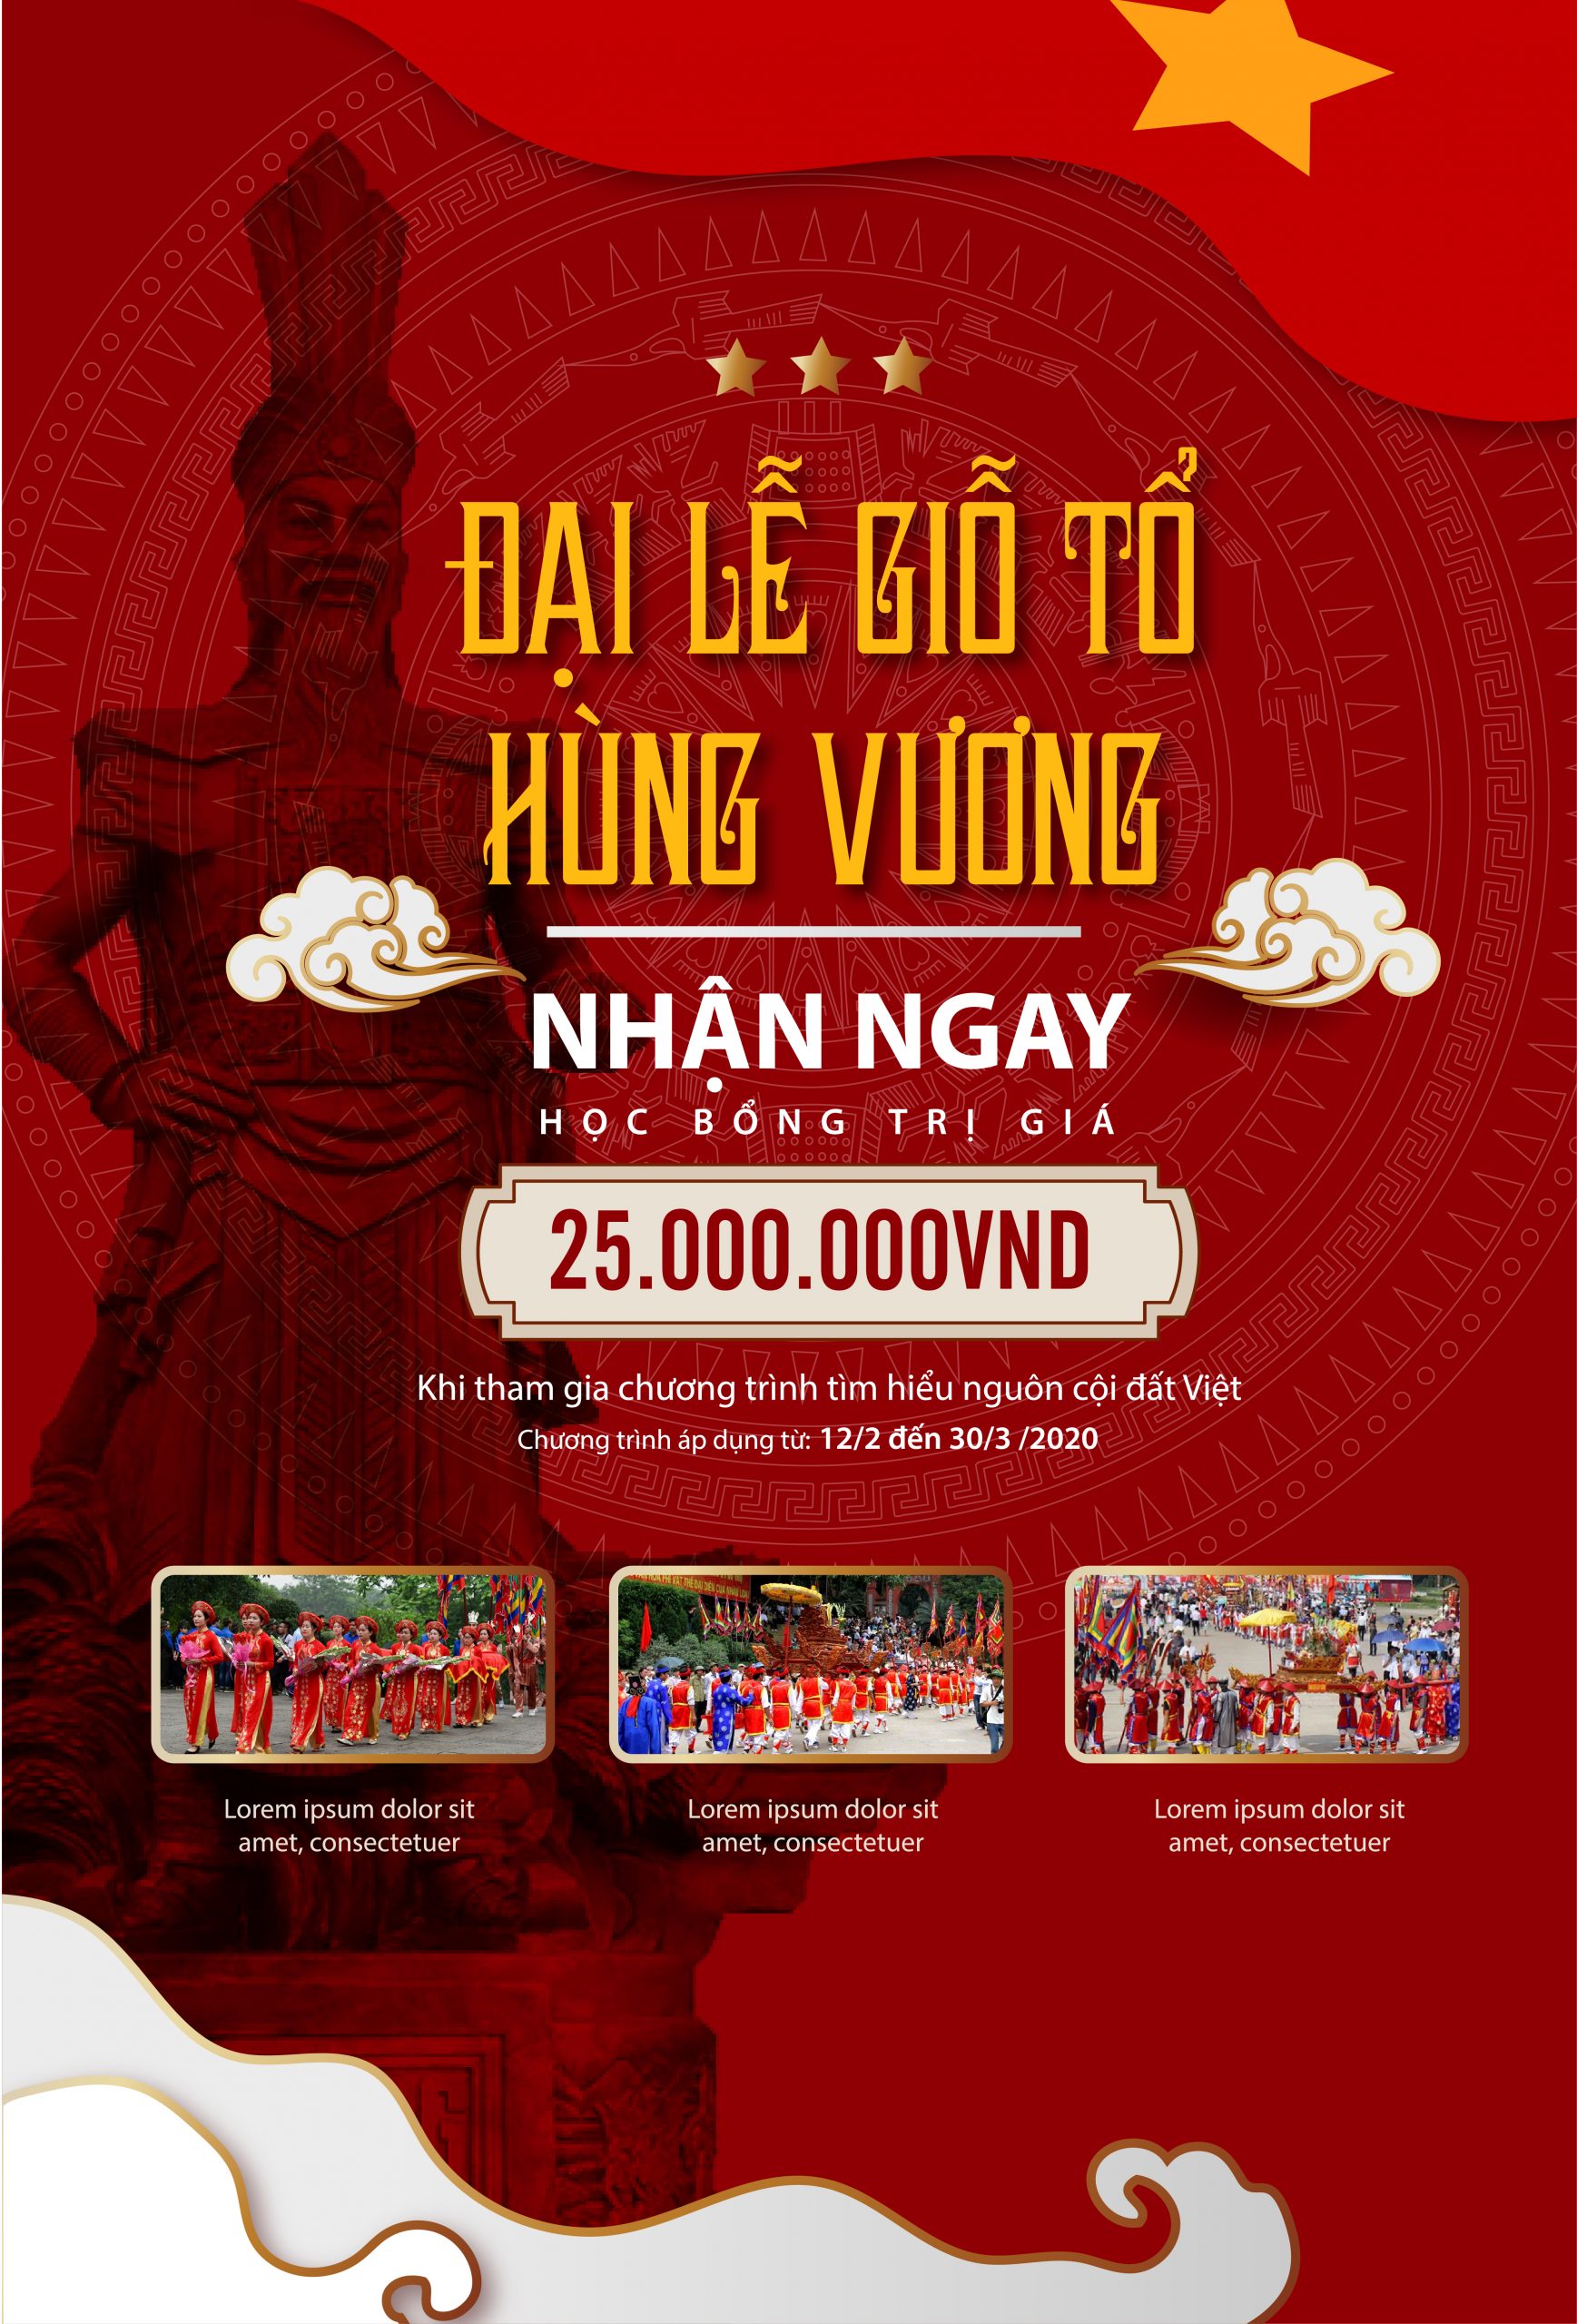 Thành phố Hồ Chí Minh tổ chức Lễ Giỗ Tổ Hùng Vương - Tạp chí Tuyên giáo